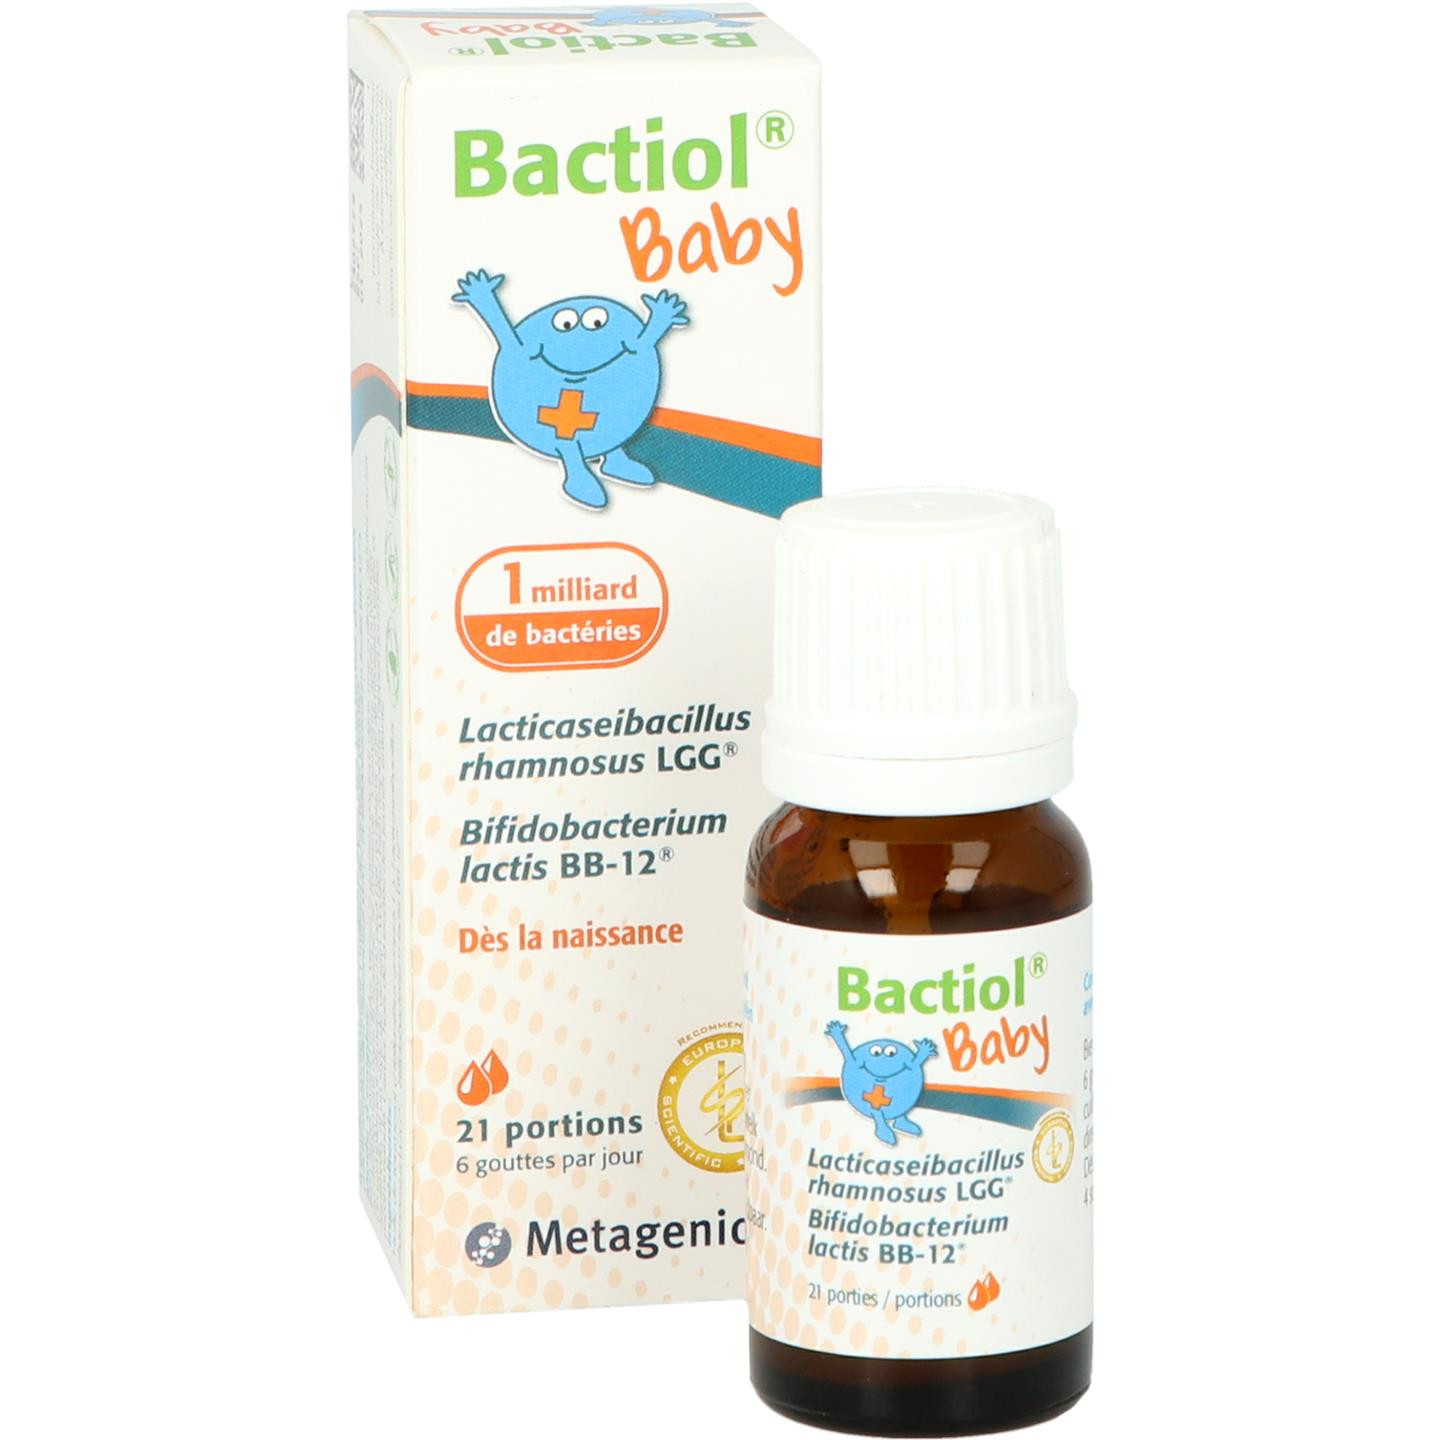 Bactiol Baby (voorheen Bactiol druppels)